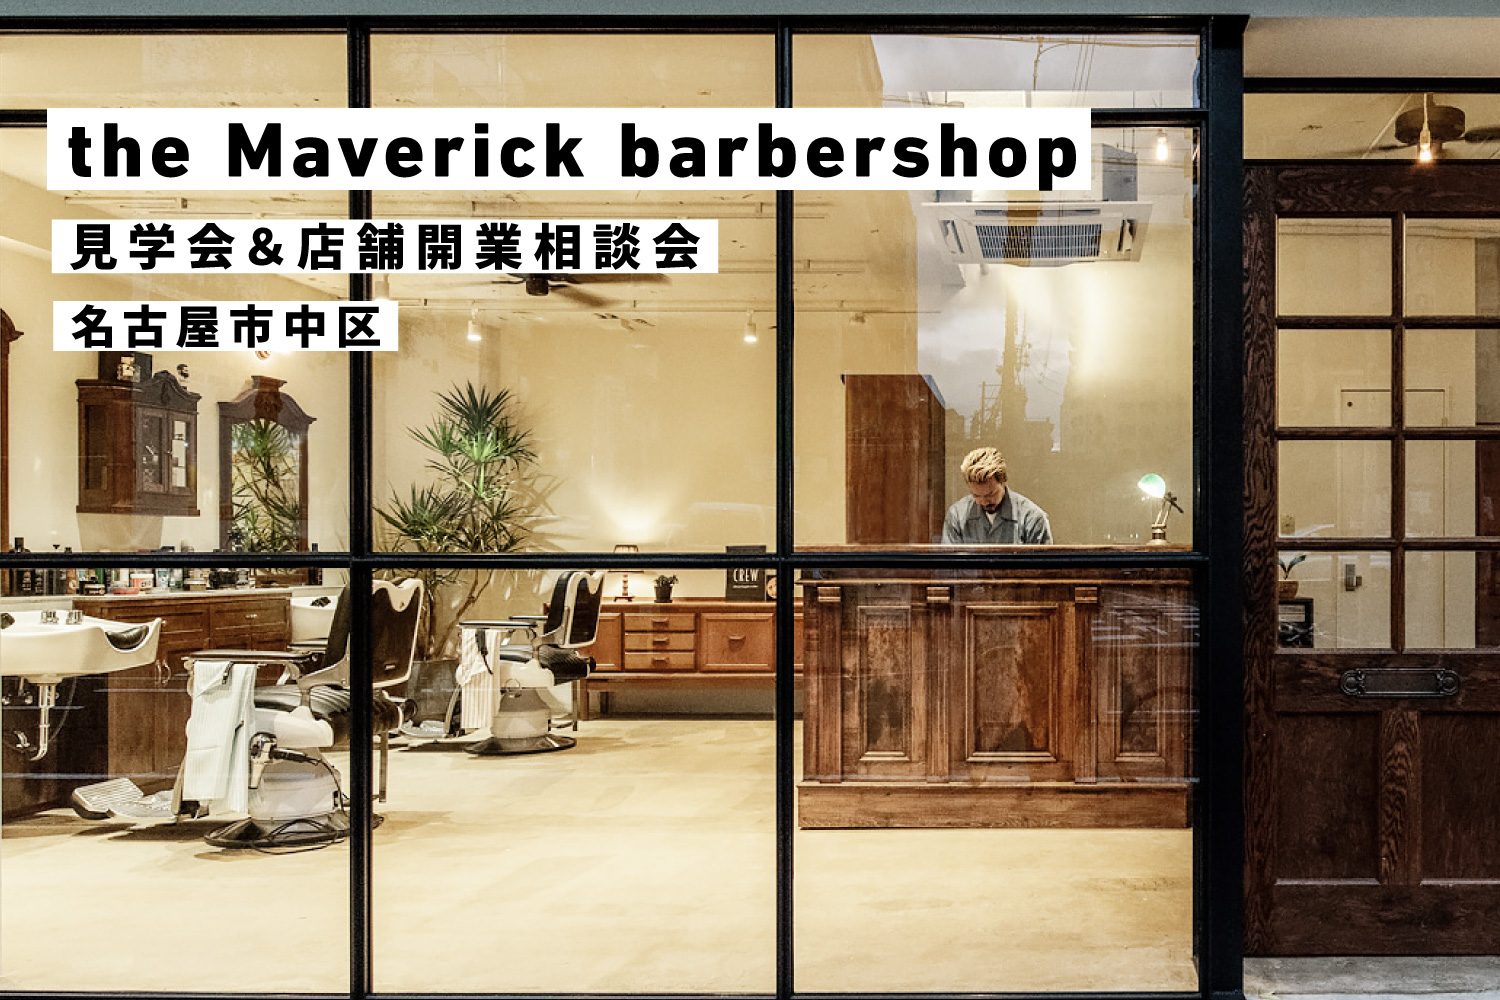 バーバーショップ見学会＆美容業開業相談会@The Maverick barbershop